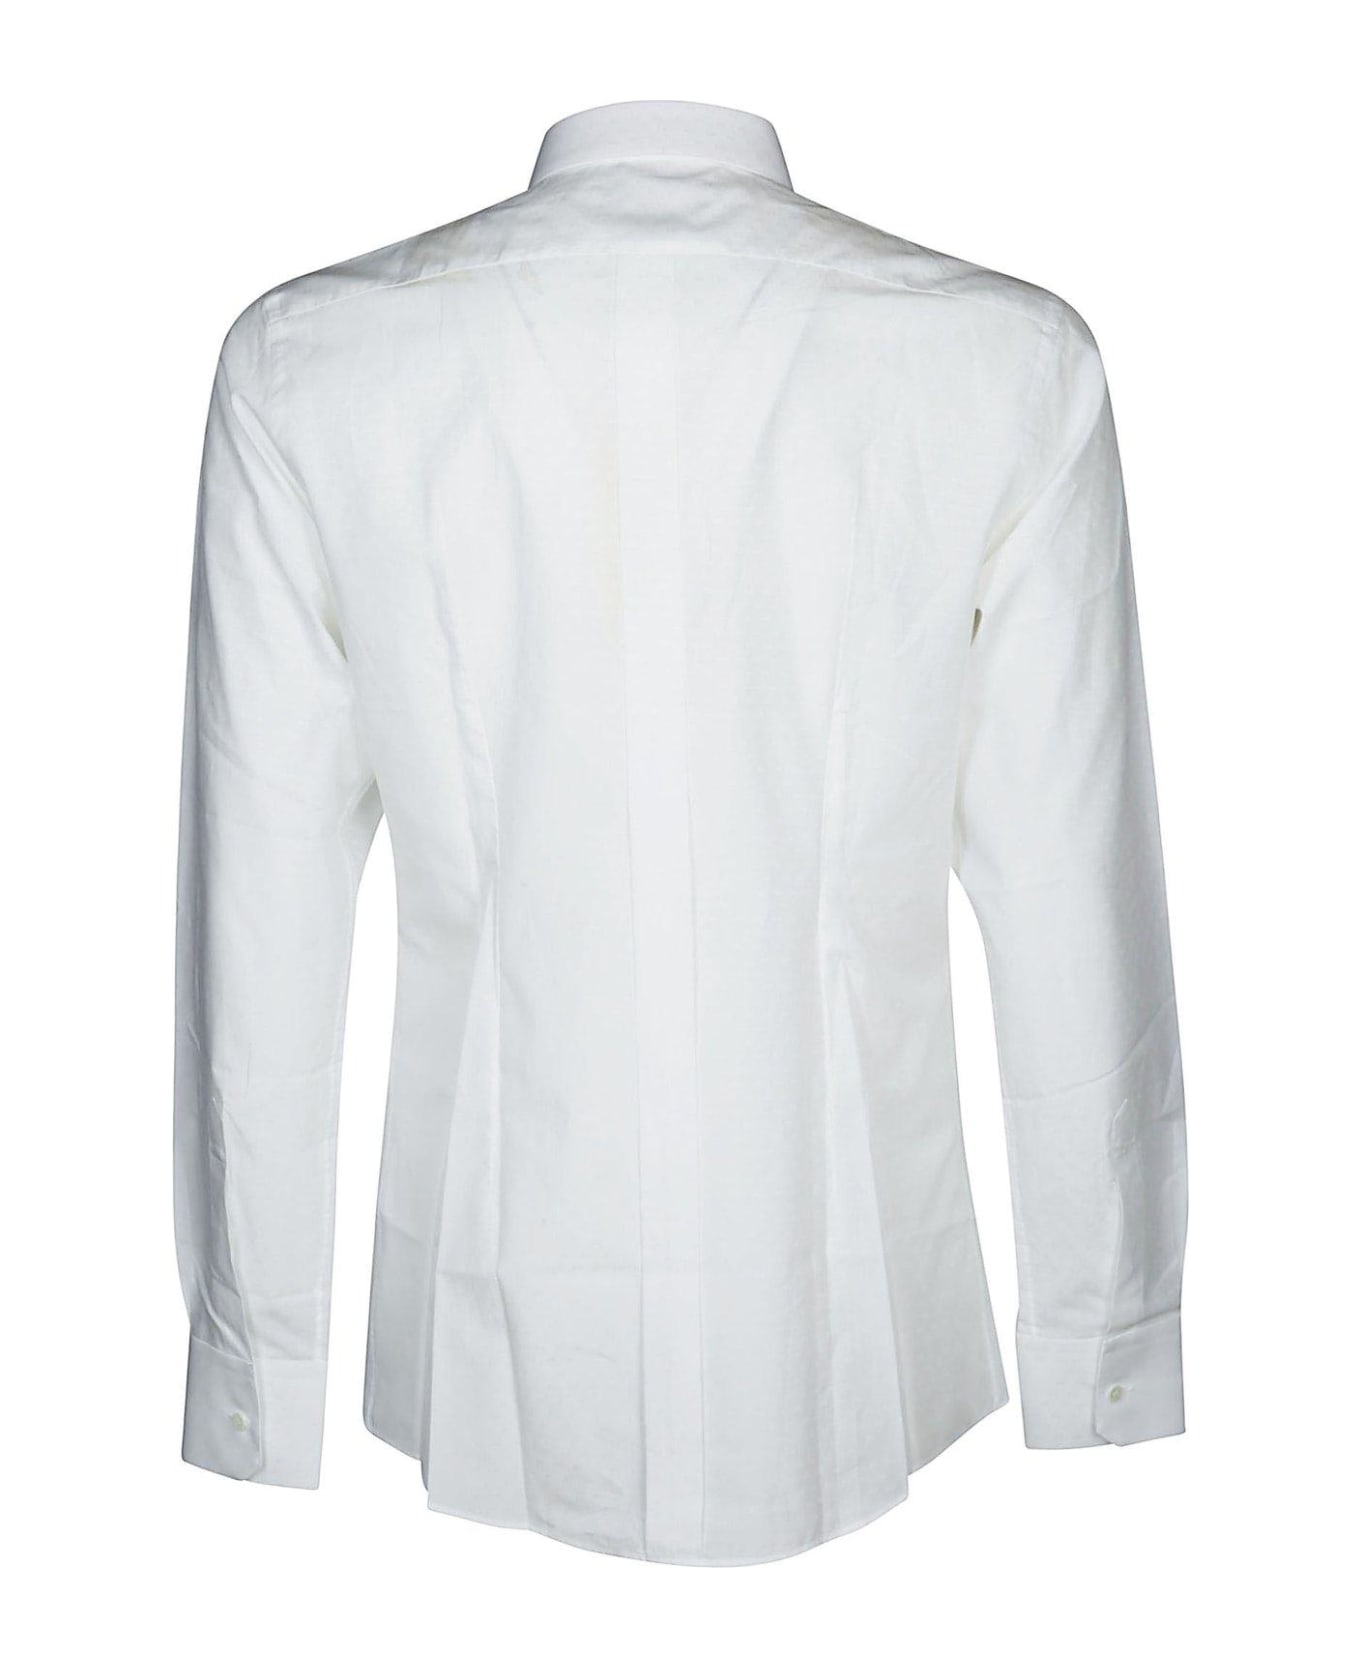 Dolce & Gabbana Jacquard Logo Tailored Shirt - Bianco シャツ